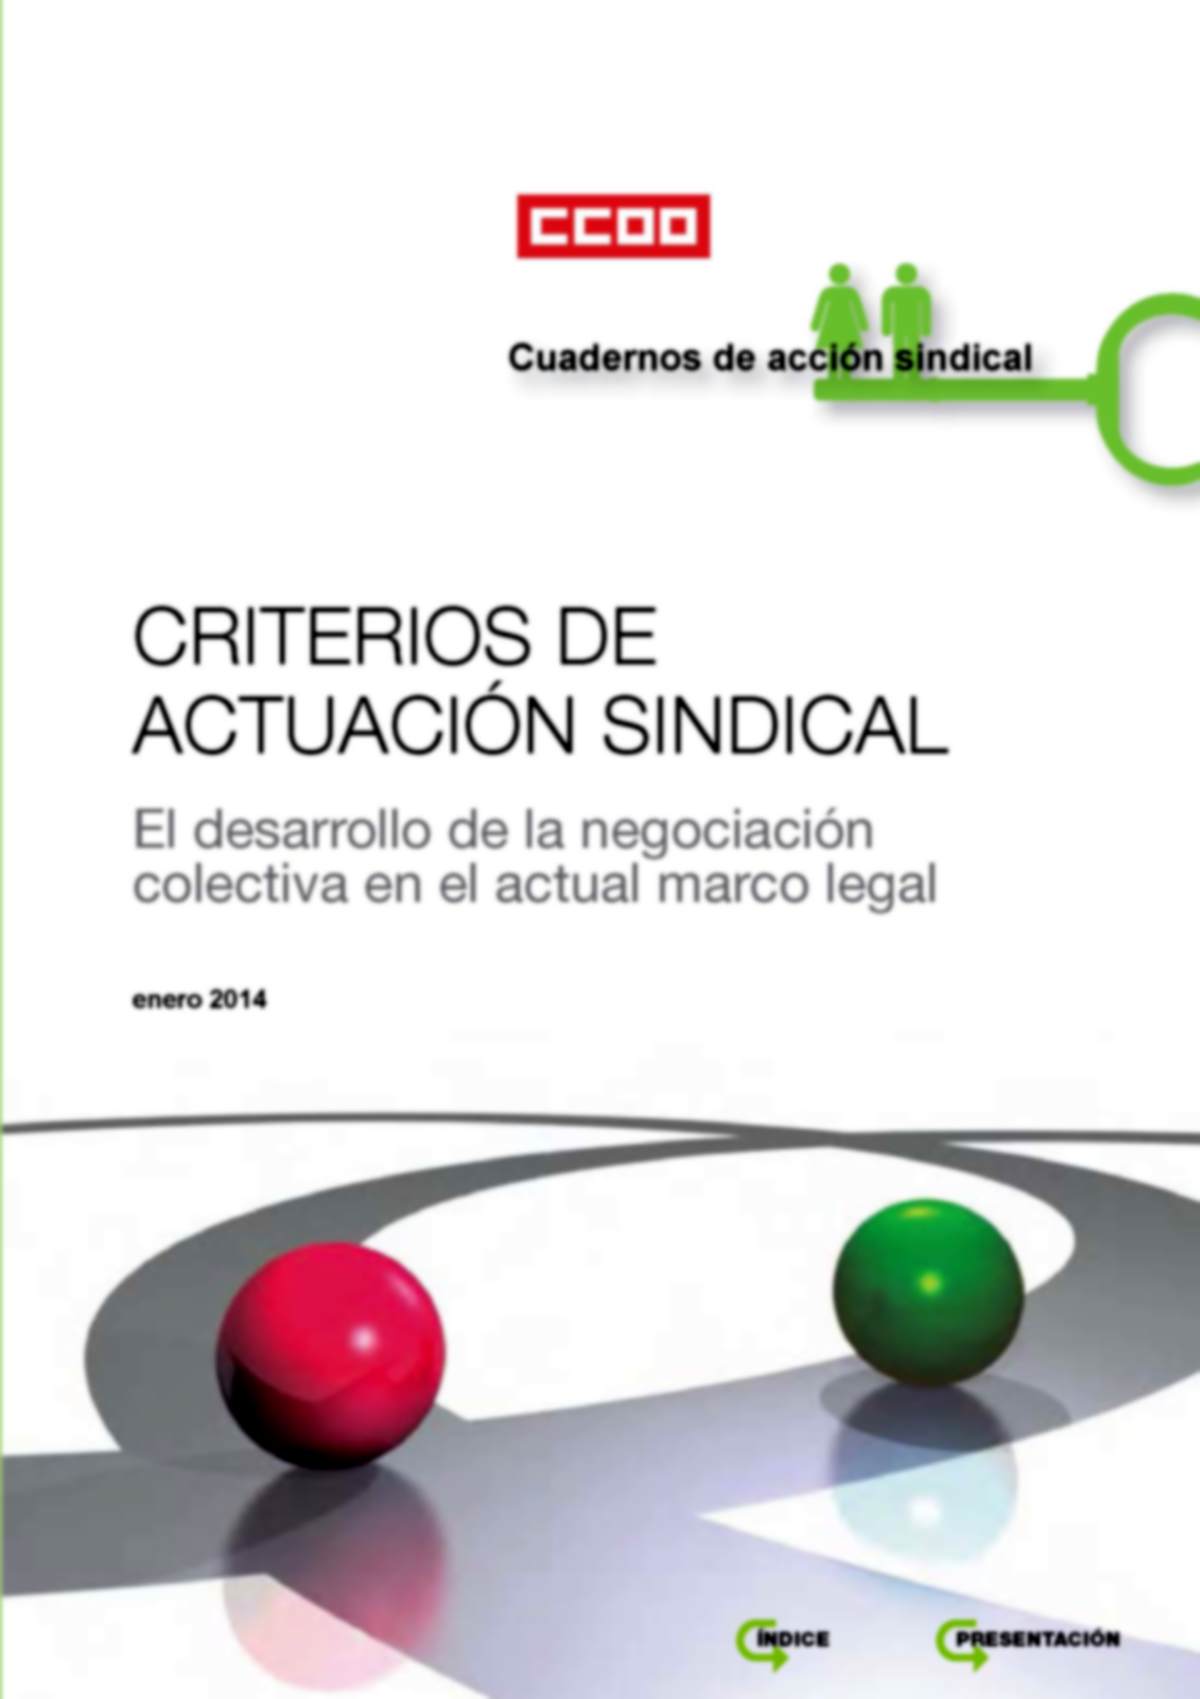 Criterios de Actuación Sindical "El desarrollo de la negociación colectiva en el actual marco legal"